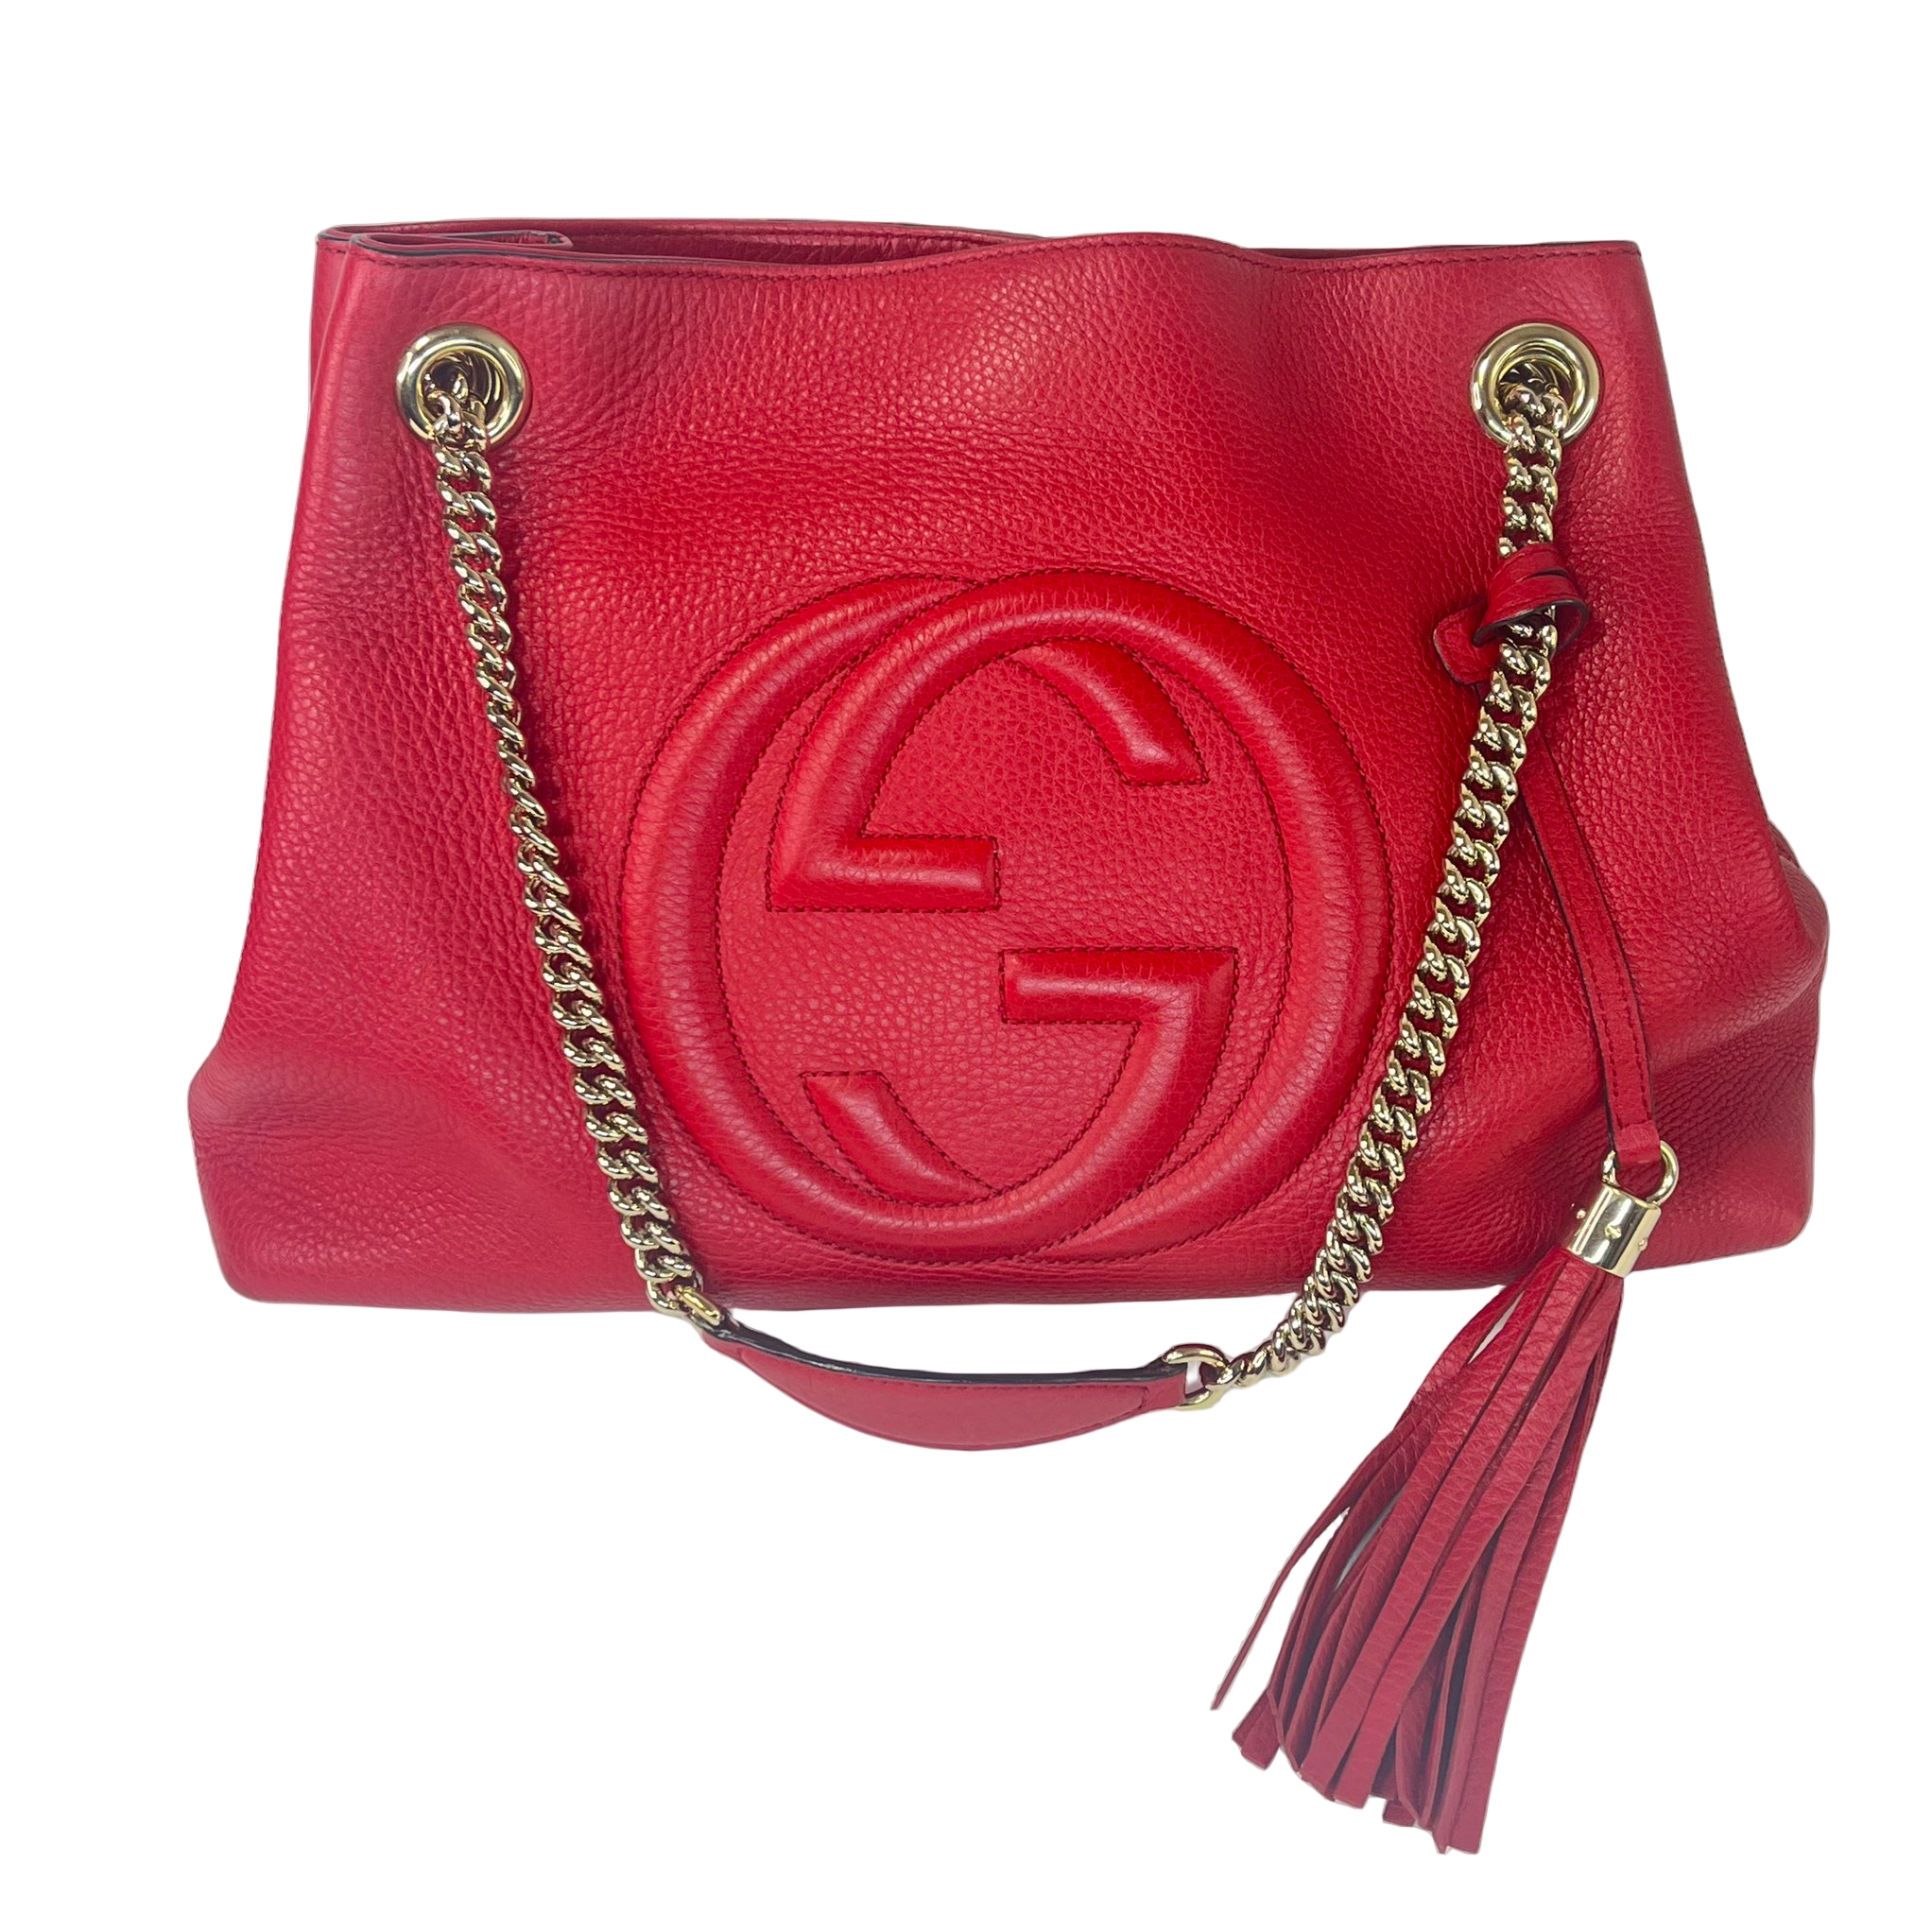 Gucci Soho Red Medium Leather Shoulder Bag